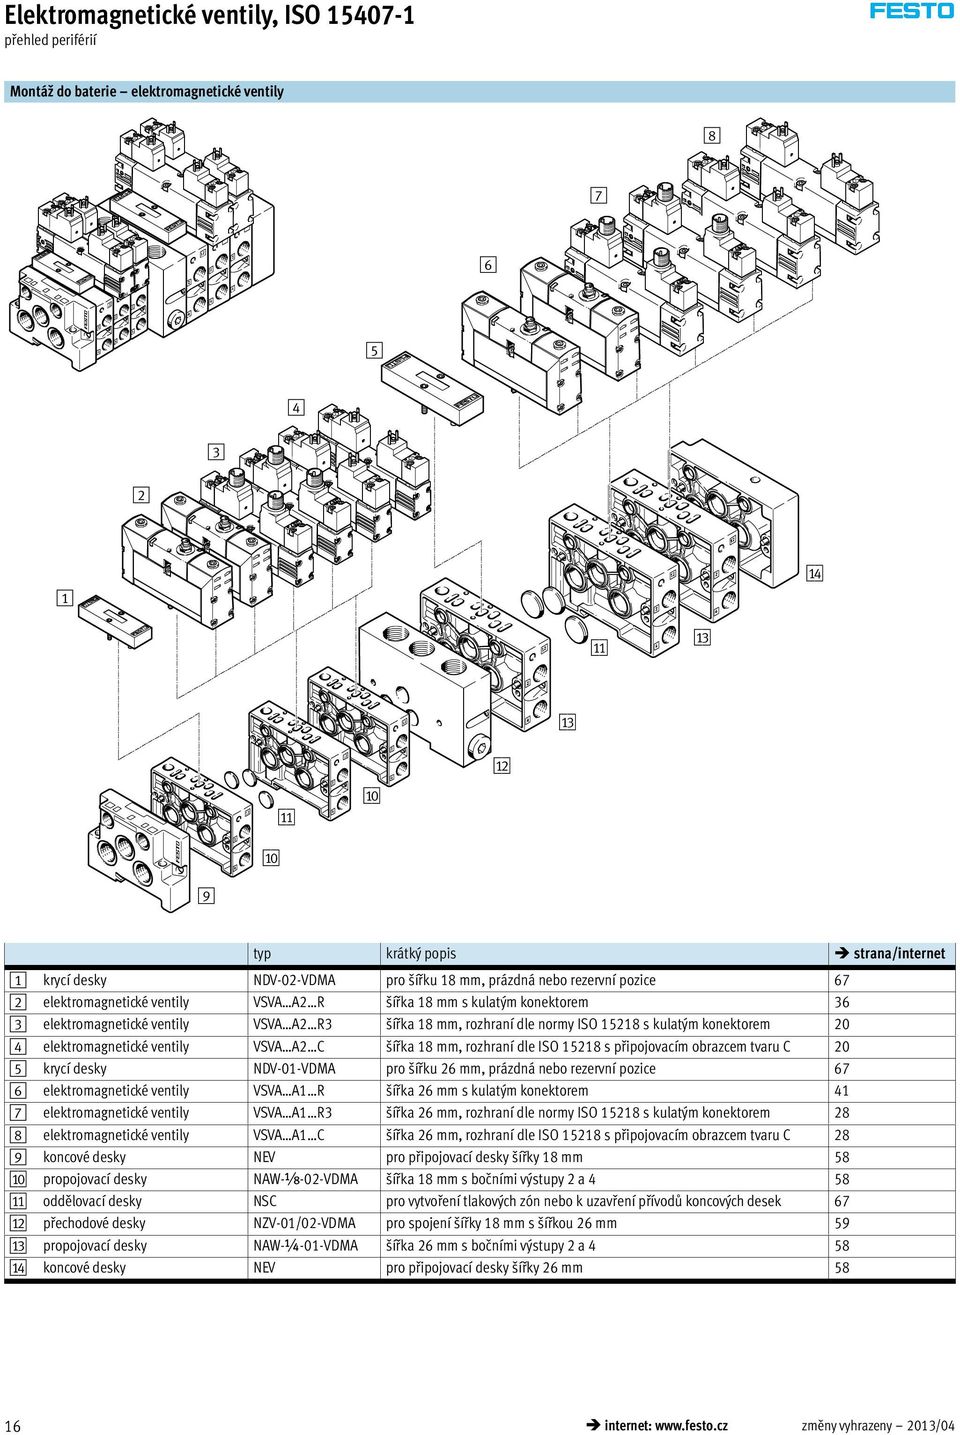 normy ISO 15218 s kulatým konektorem 20 4 elektromagnetické ventily VSVA A2 C šířka 18 mm, rozhraní dle ISO 15218 s připojovacím obrazcem tvaru C 20 5 krycí desky NDV-01-VDMA pro šířku 26 mm, prázdná